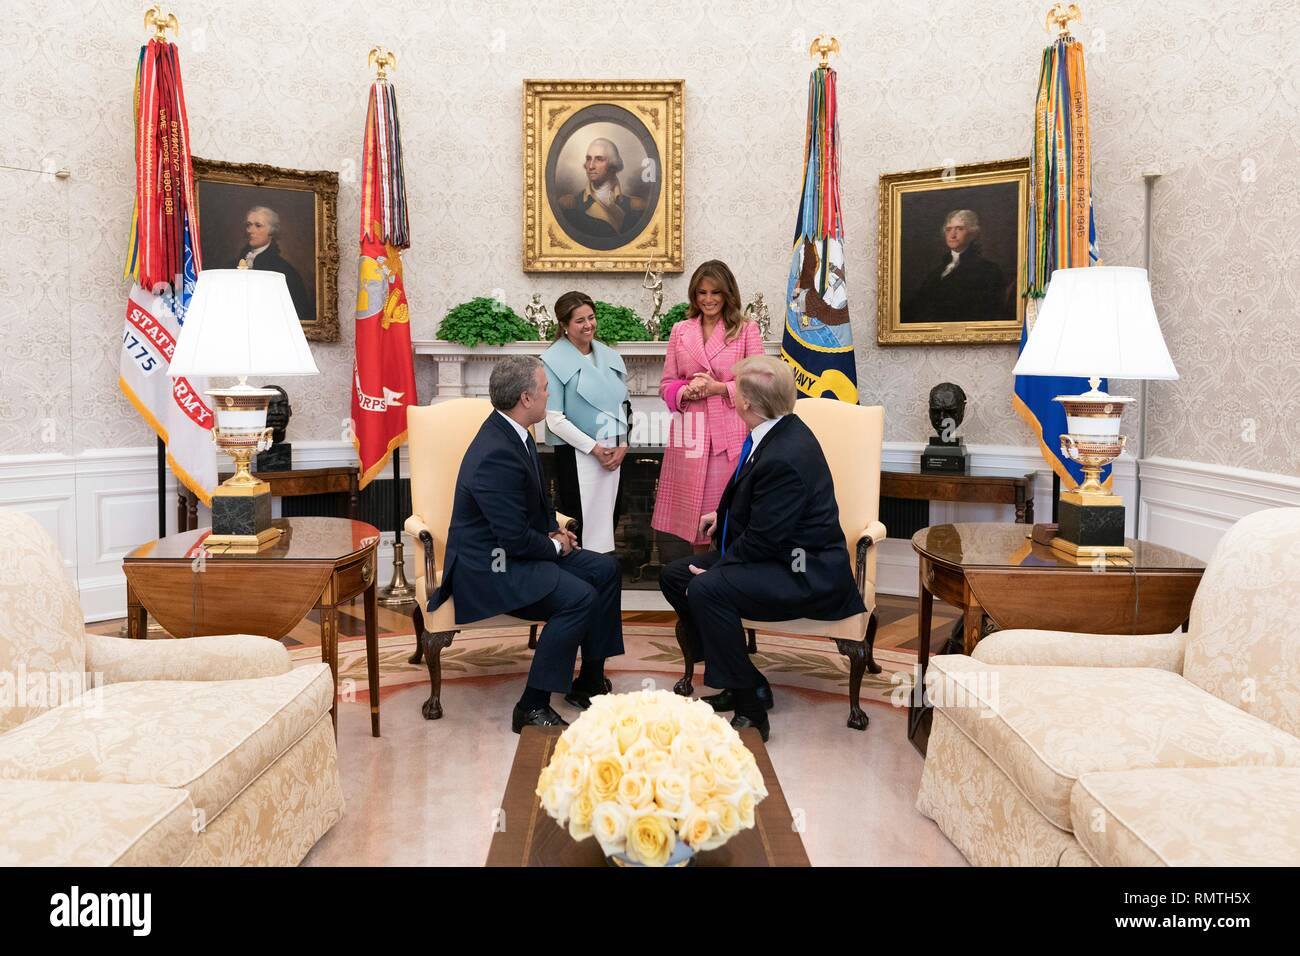 Président américain Donald Trump et la Première Dame Melania Trump rencontrez le président colombien Ivan Marquez Duque et son épouse Maria Juliana Ruiz dans le bureau ovale de la Maison Blanche, le 13 février 2019 à Washington, DC. Banque D'Images